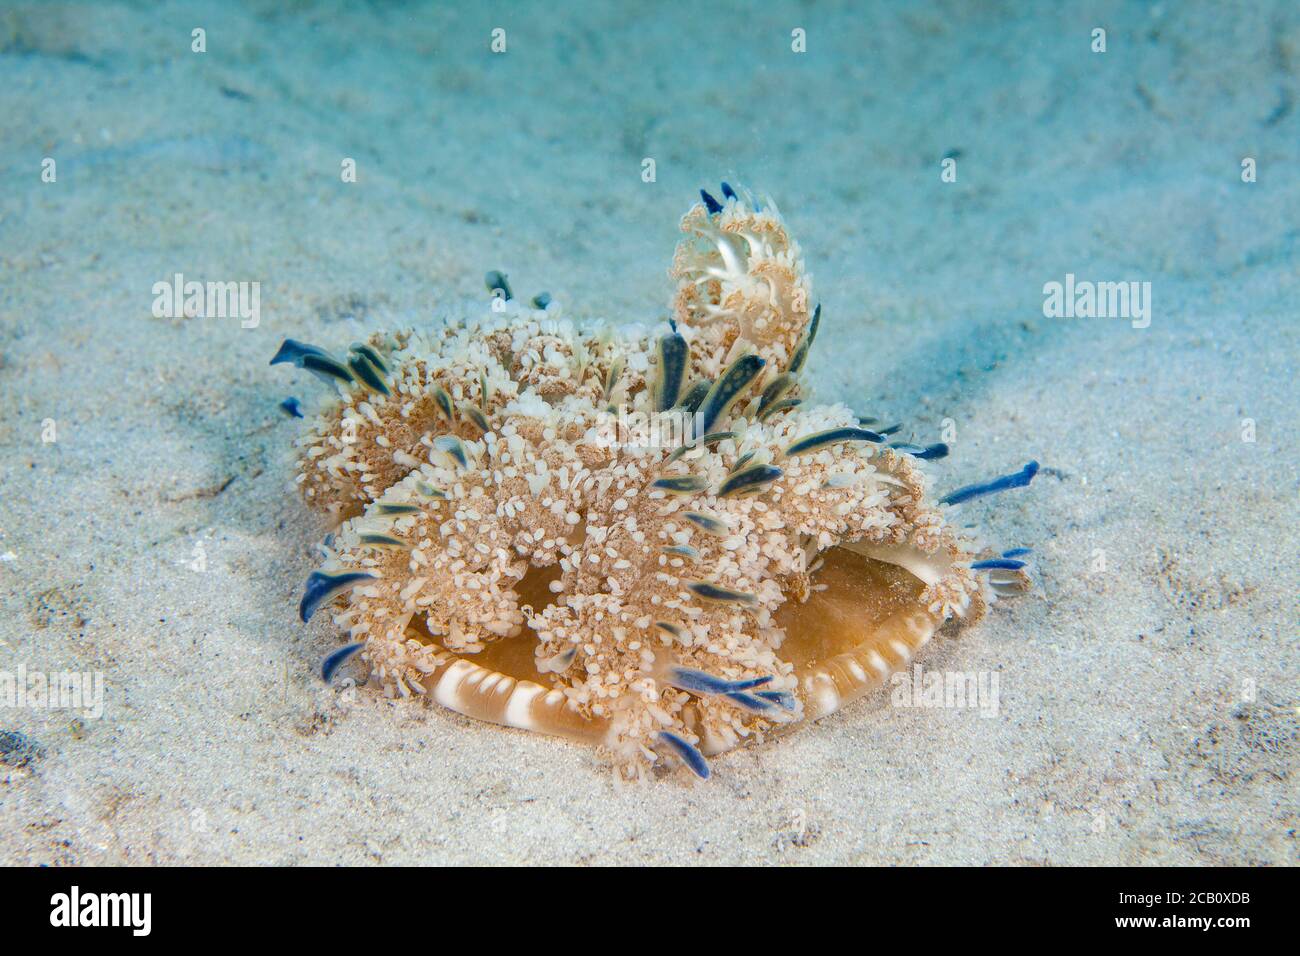 Diese Mangrovenqualle Cassiopea xamachana imitiert ihre Nähe zu den Seeanemonen und wird häufig als ruhende, glockenlose Tentakfische gesehen Stockfoto